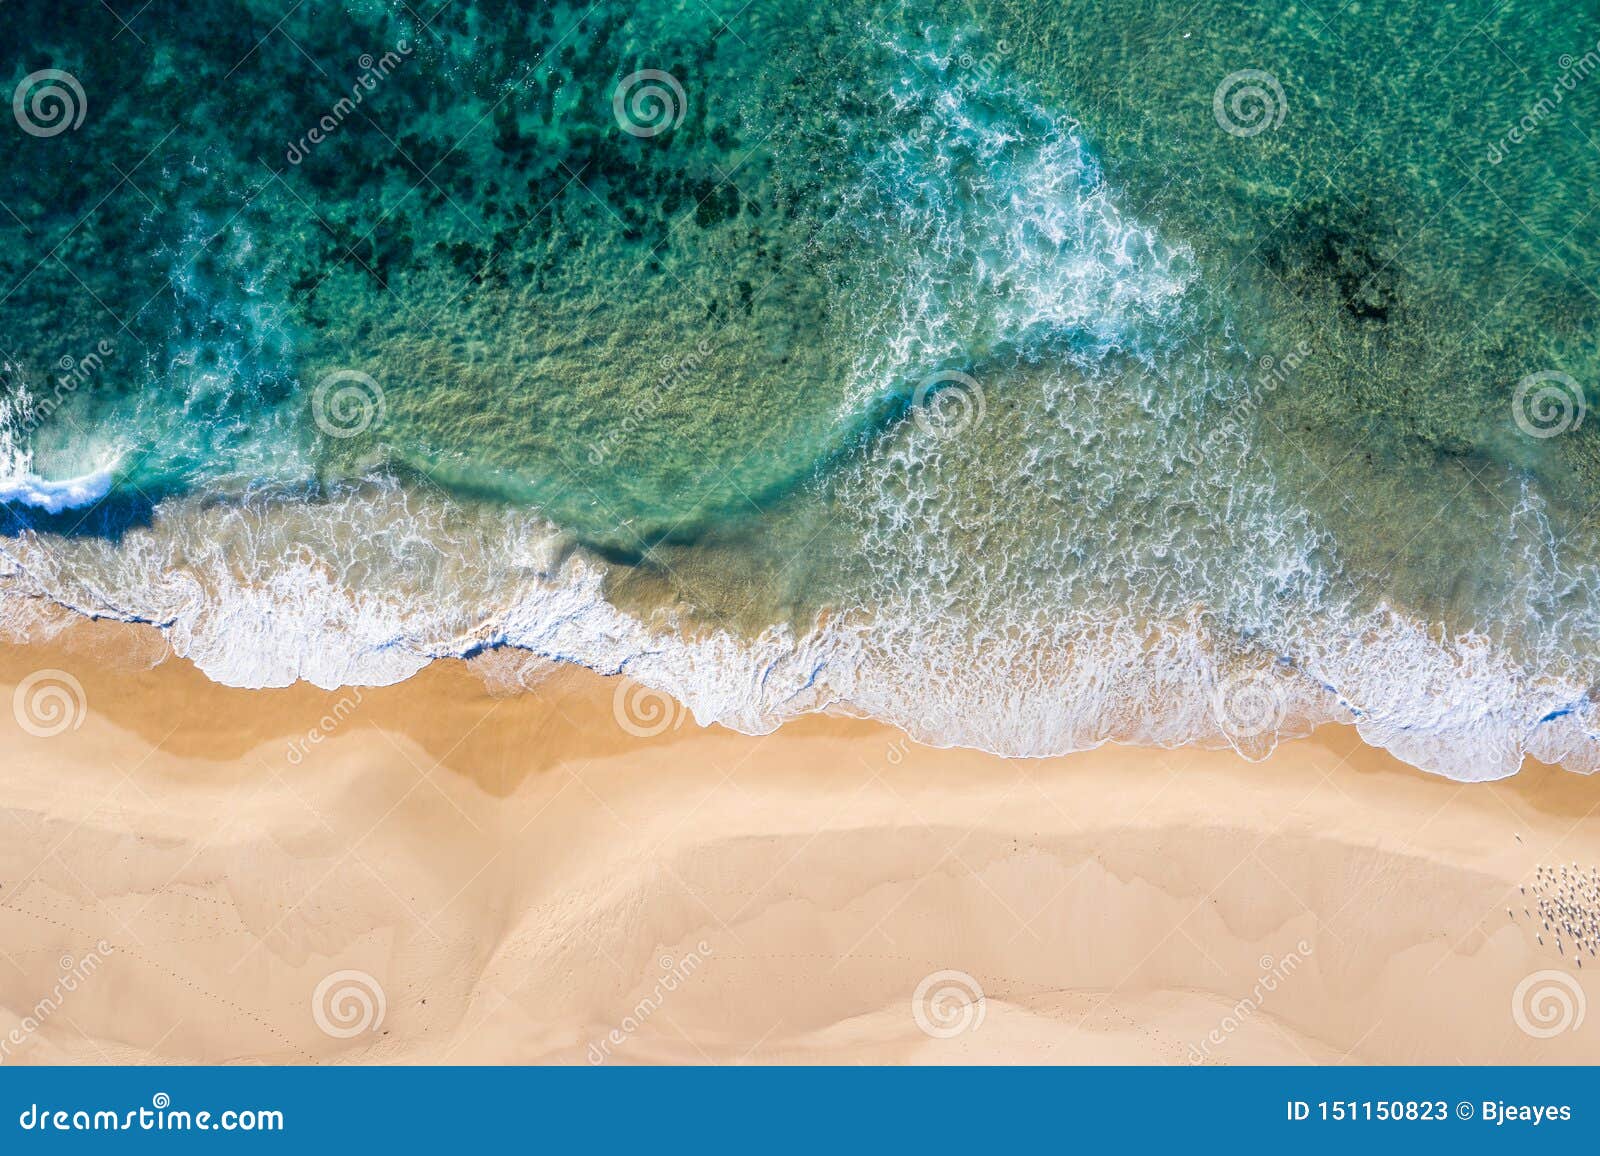 nobbys beach - newcastle nsw australia - aerial view